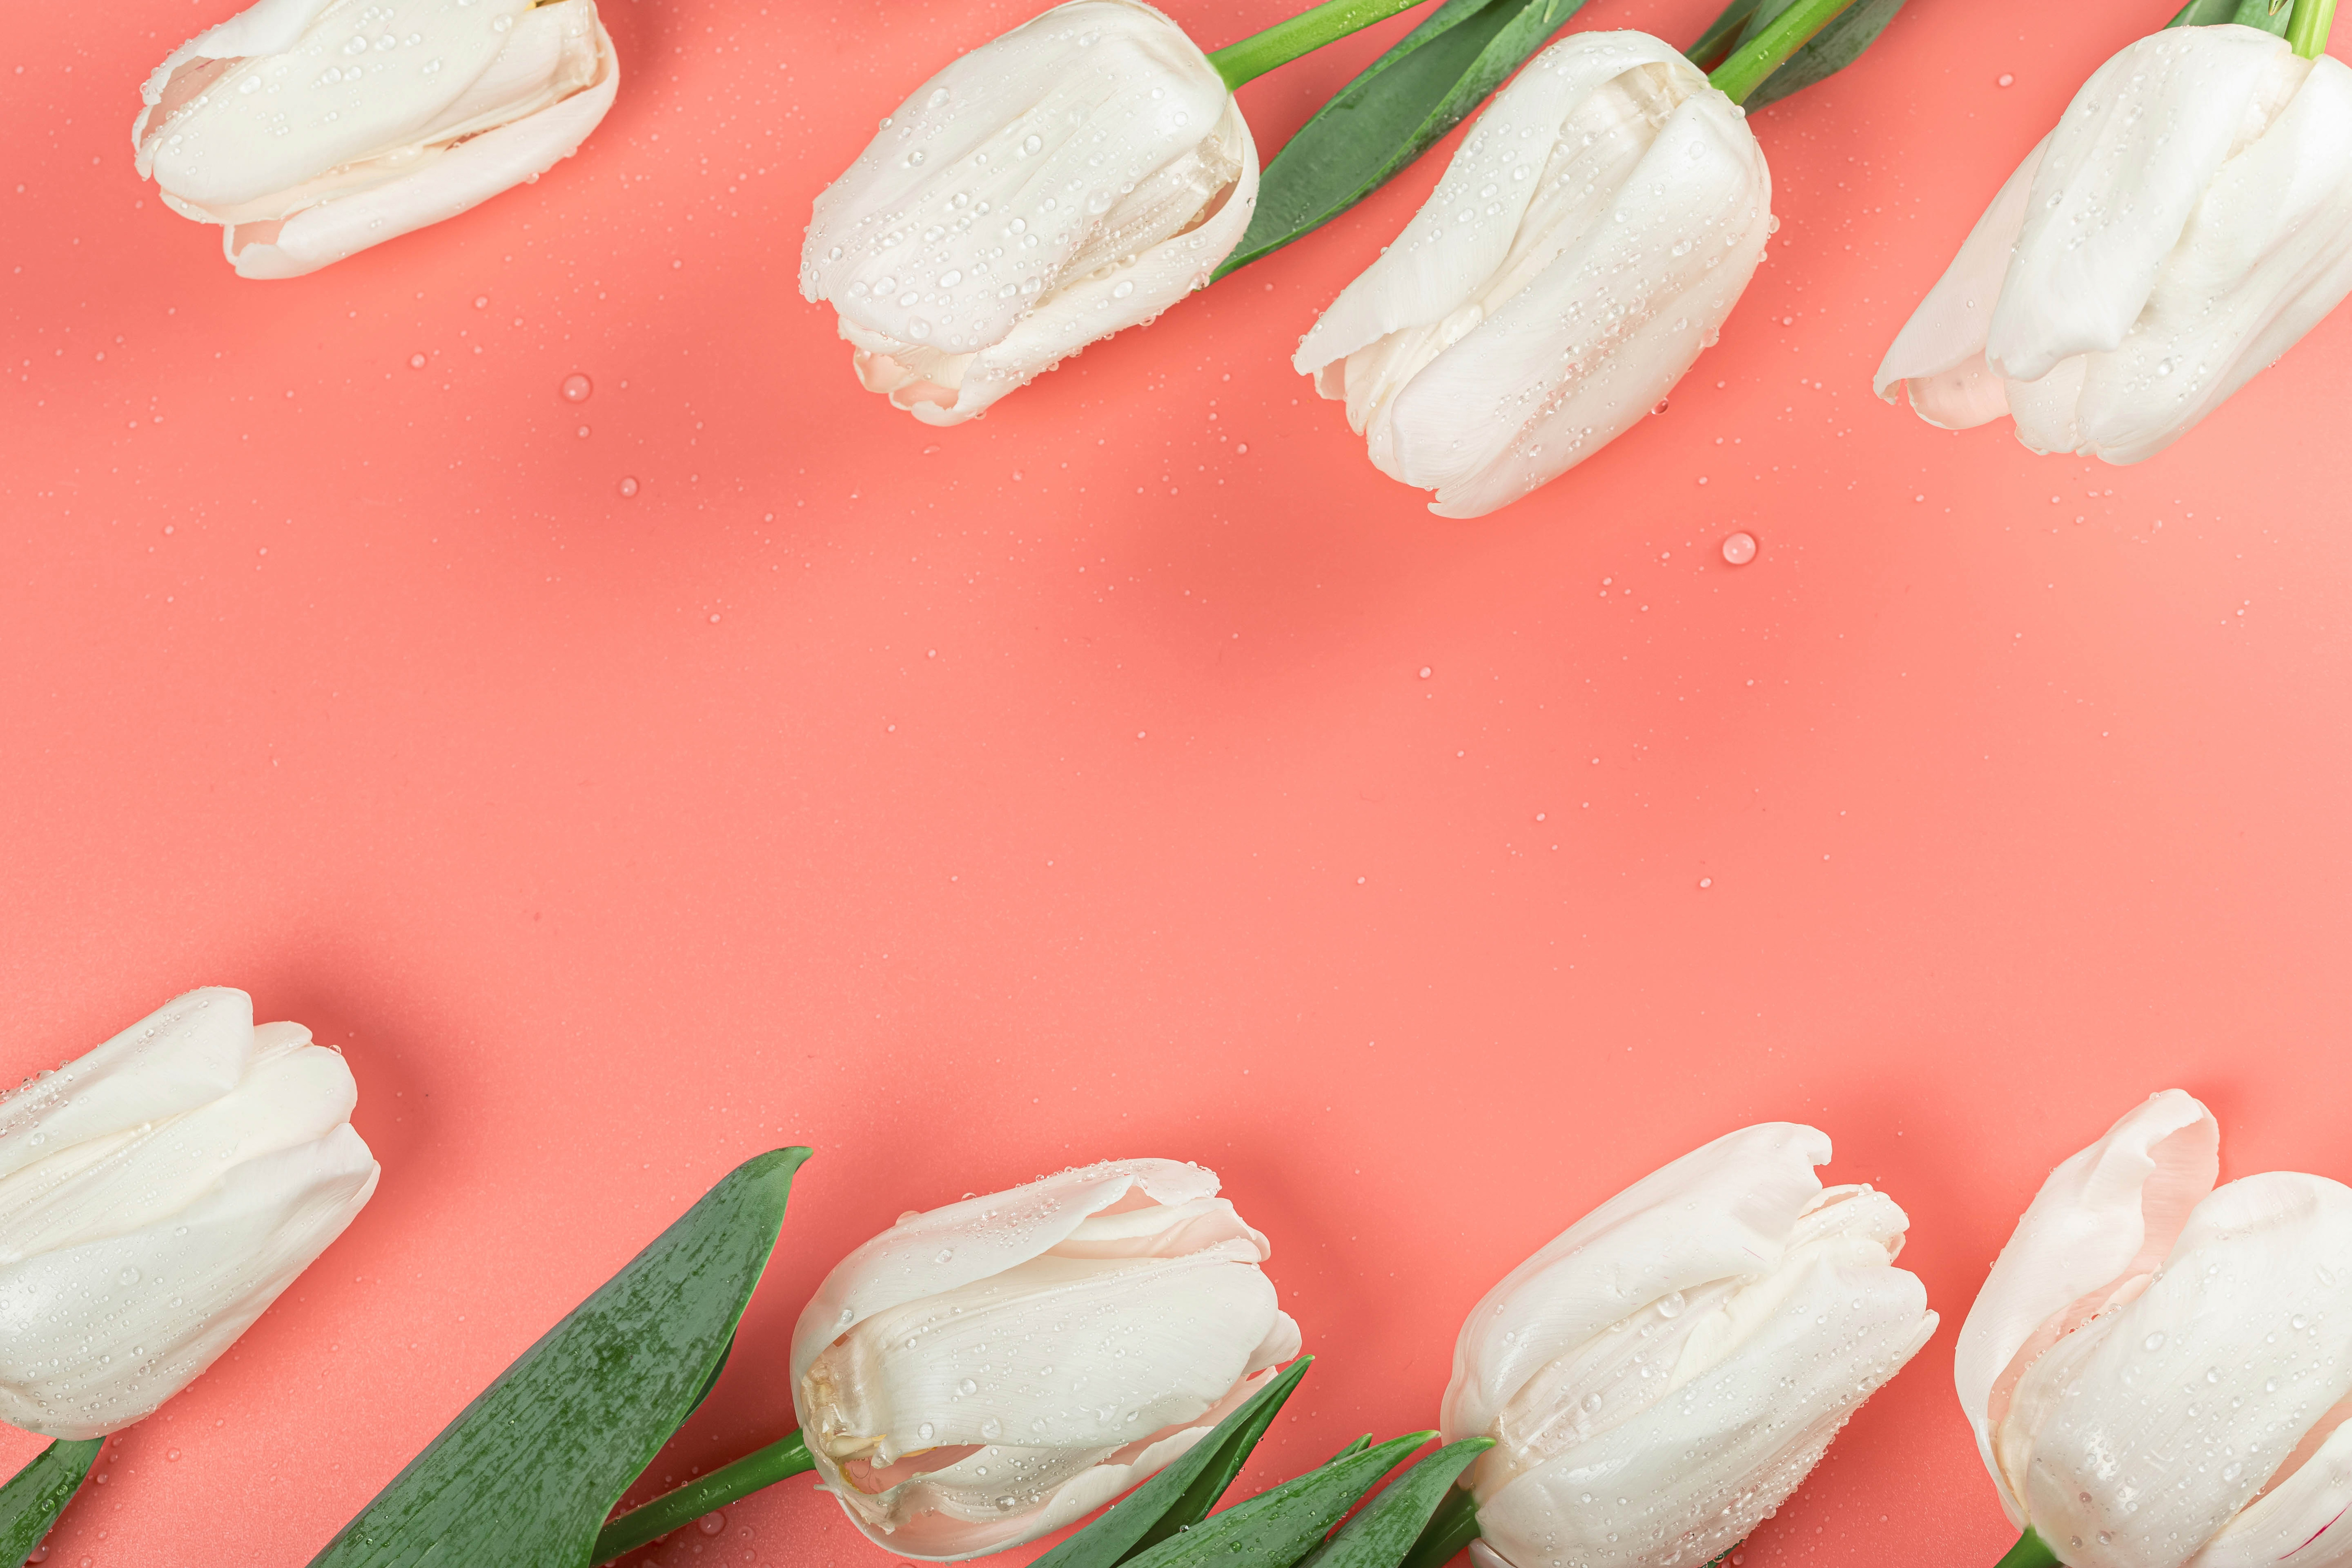 Zastaki.com - Белые тюльпаны в каплях росы на розовом фоне